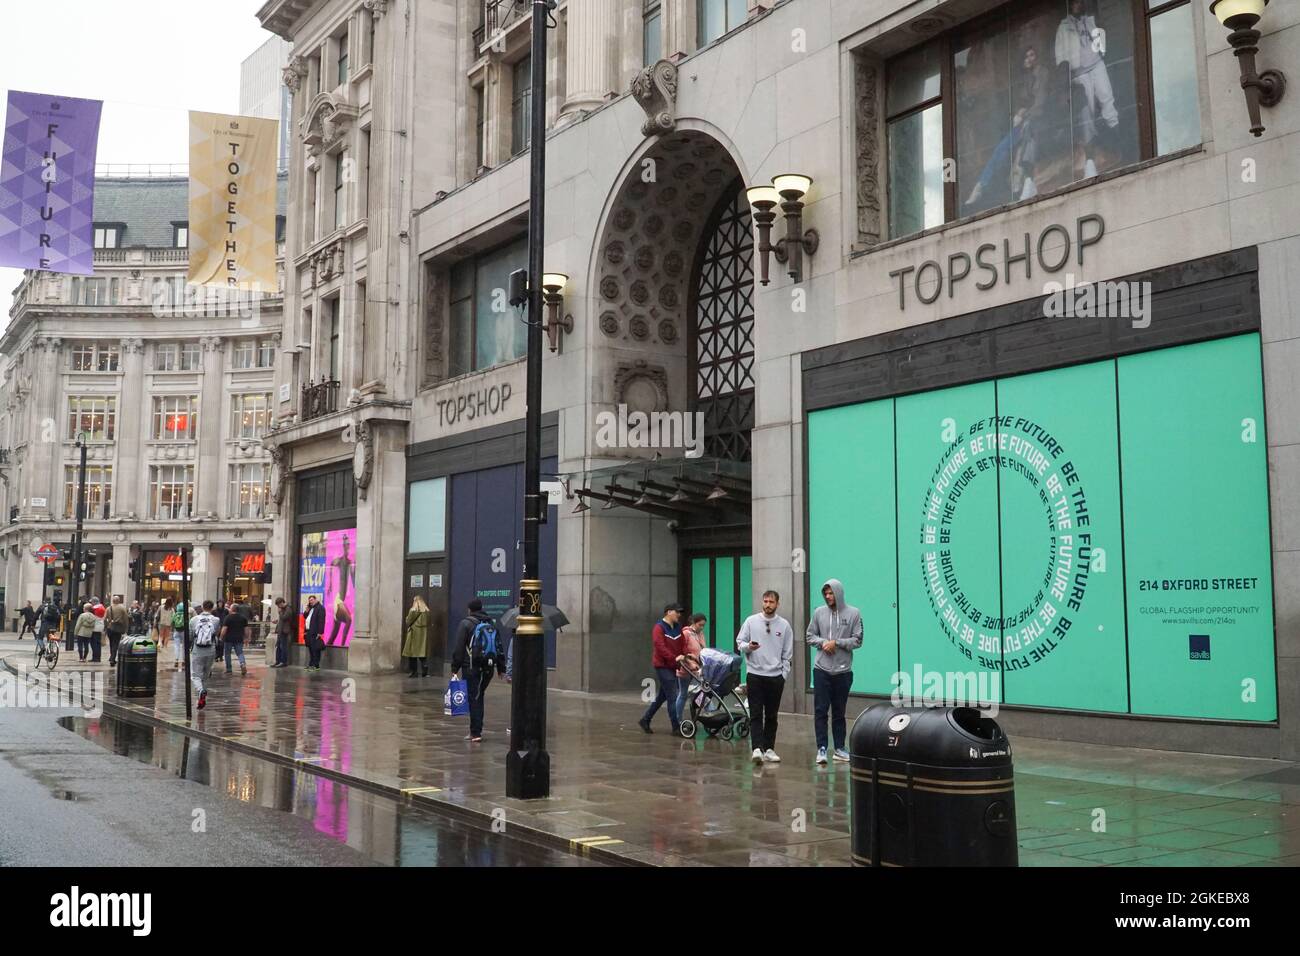 Londres, Royaume-Uni, 14 septembre 2021 : il a été annoncé que l'ancien magasin Topshop d'Oxford Circus a été loué à IKEA pour un magasin phare du West End. Anna Watson/Alay Live News Banque D'Images